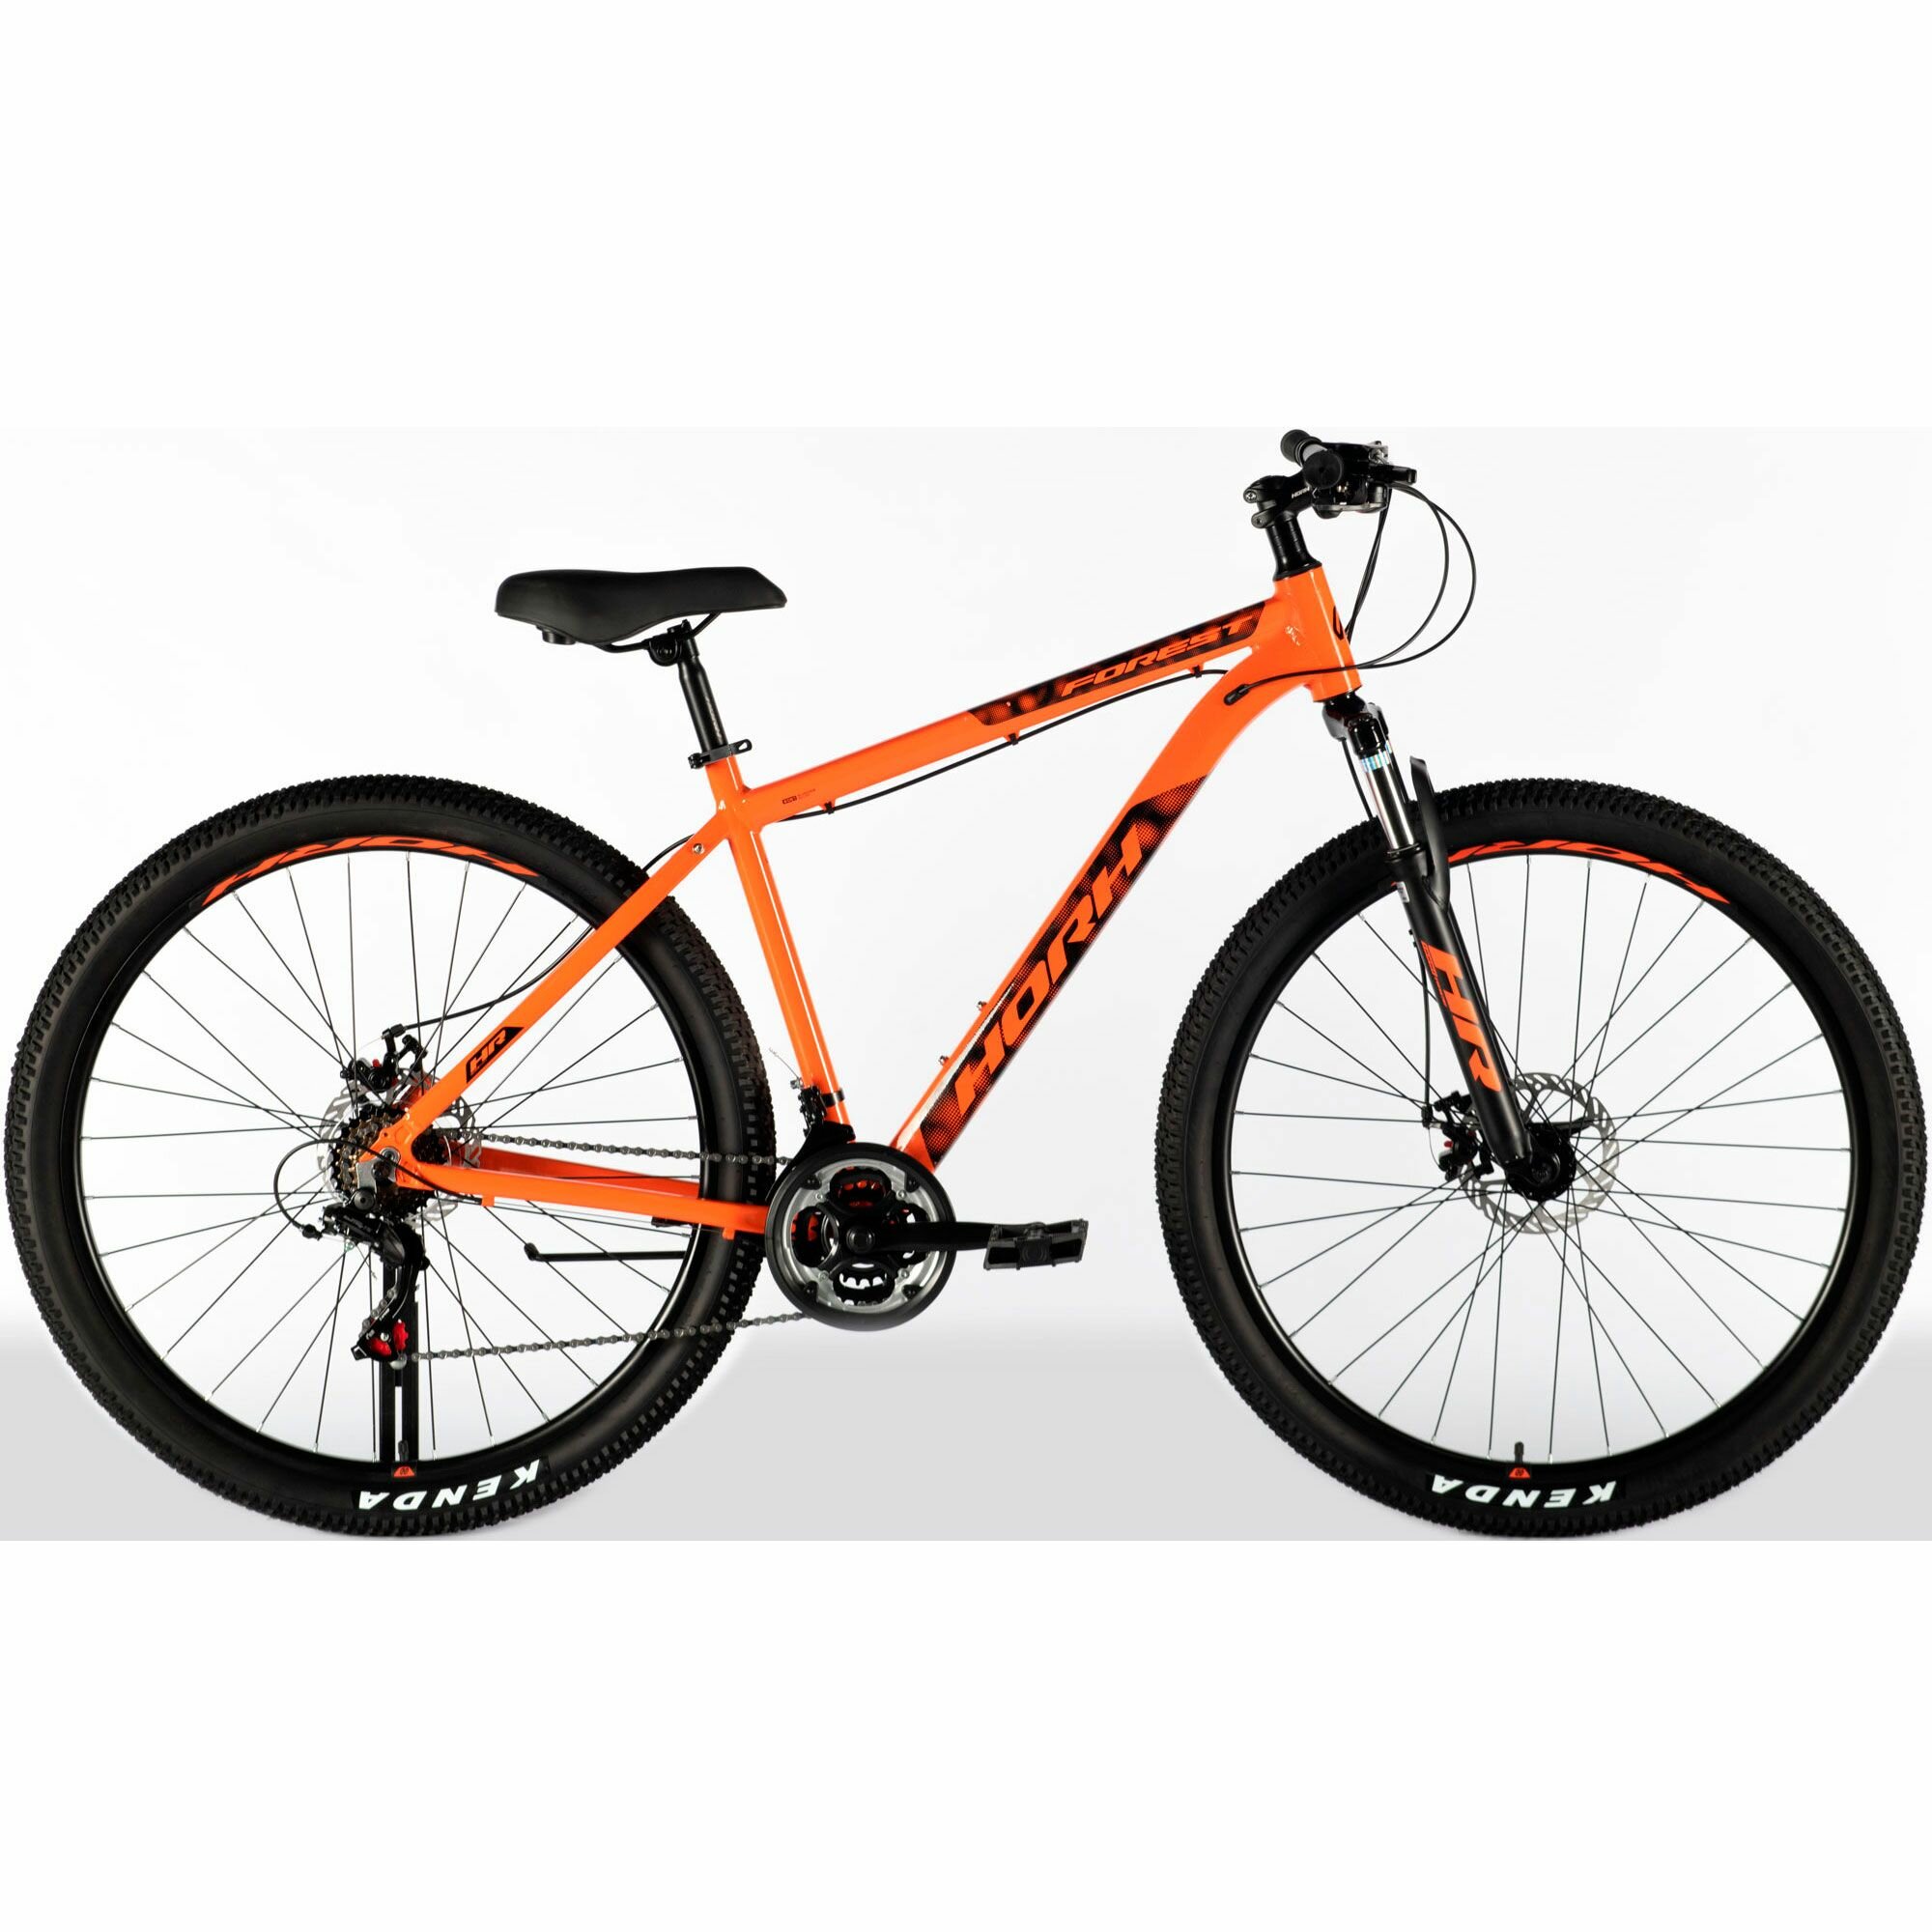 Велосипед горный HORH FOREST FMD 9.0 29 (2024), хардтейл, взрослый, мужской, алюминиевая рама, 21 скорость, дисковые механические тормоза, цвет Orange-Black, оранжевый/черный цвет, размер рамы 19", для роста 180-190 см